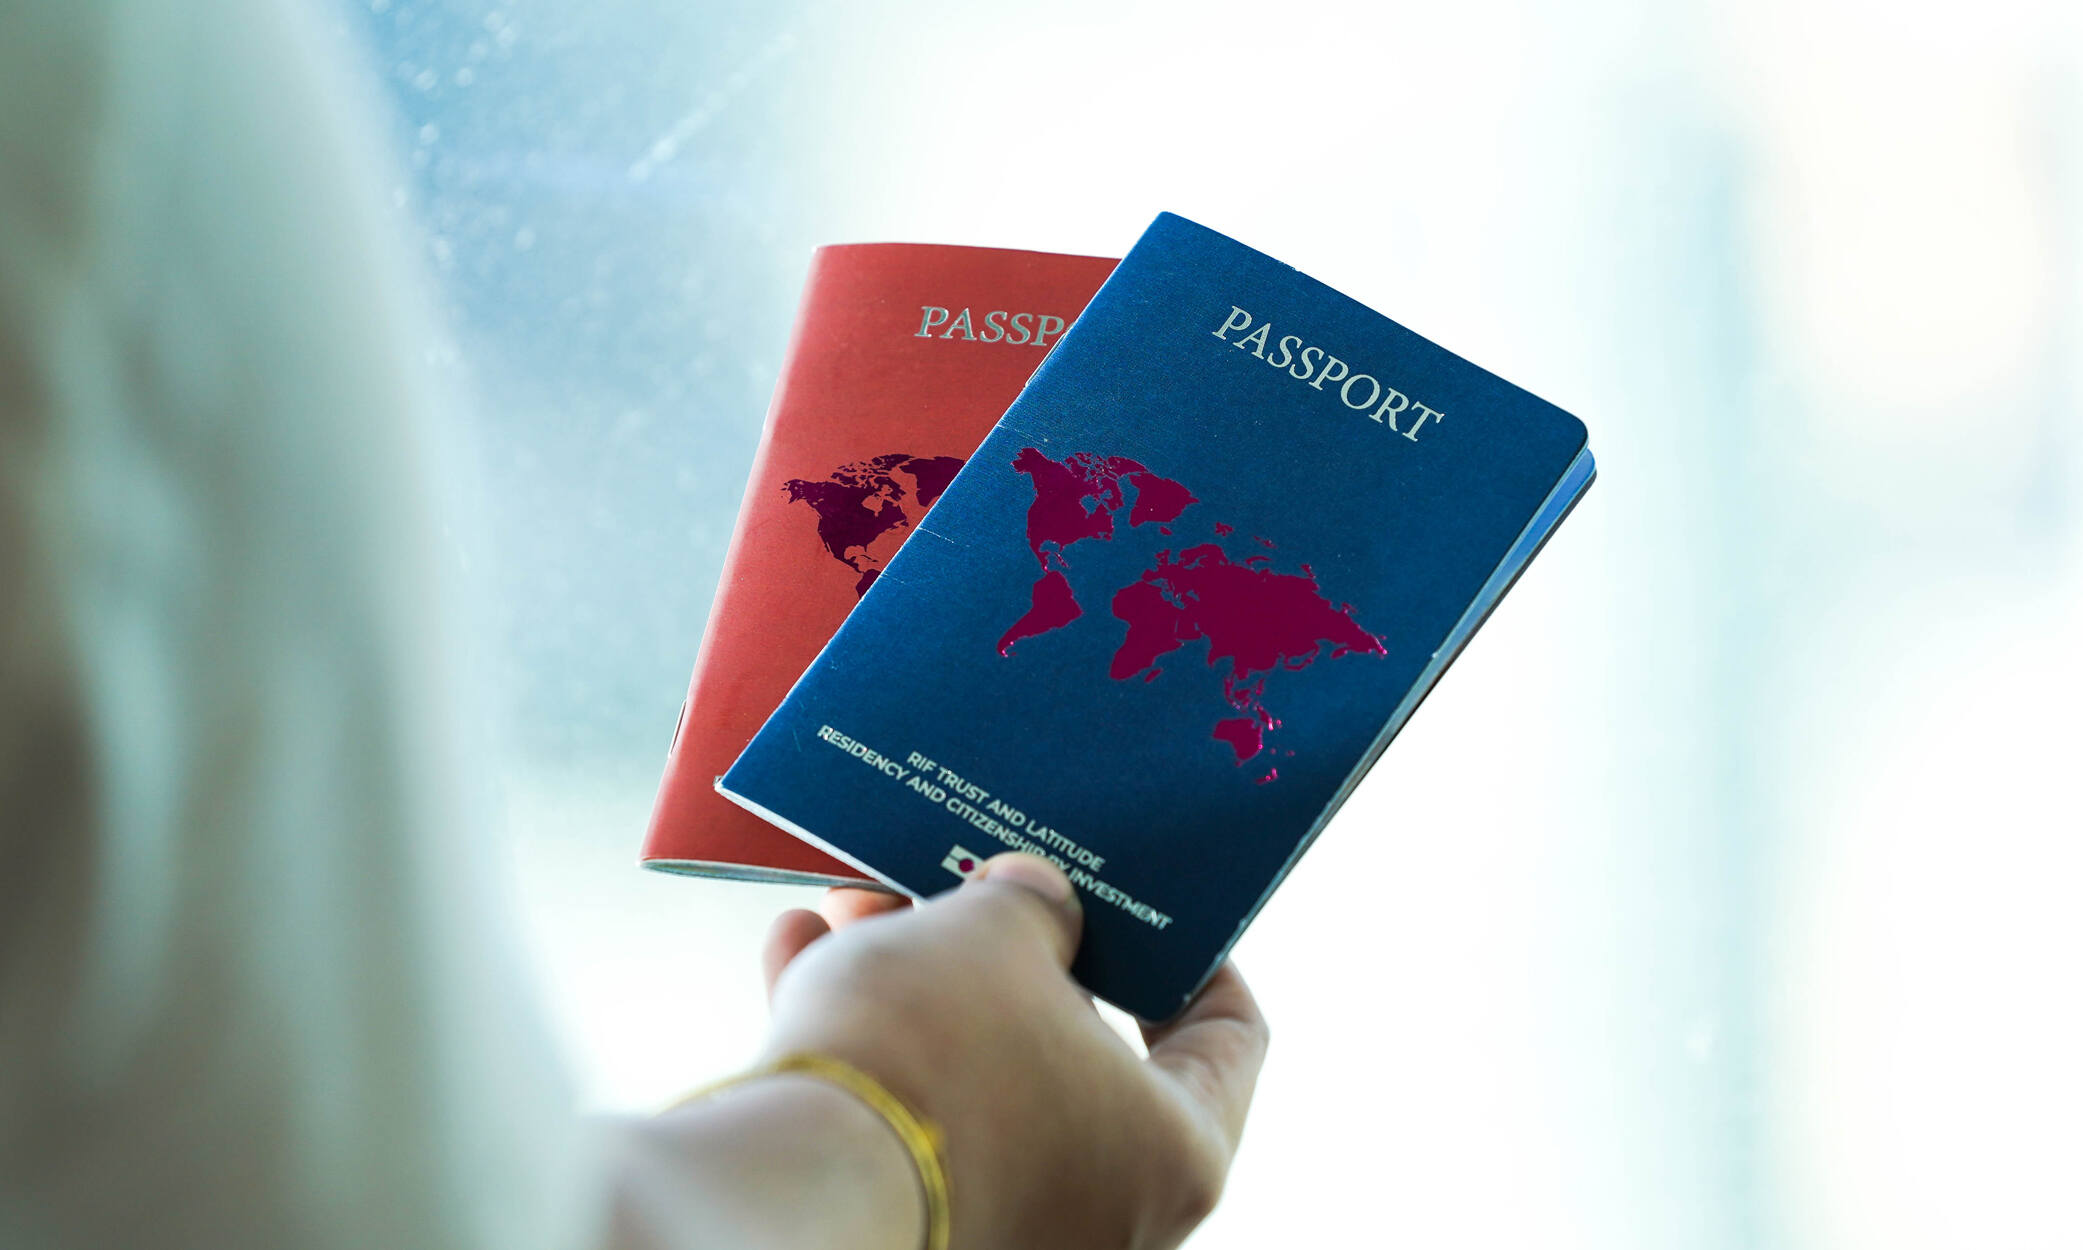 ¿Son los pasaportes dorados la solución que busca?